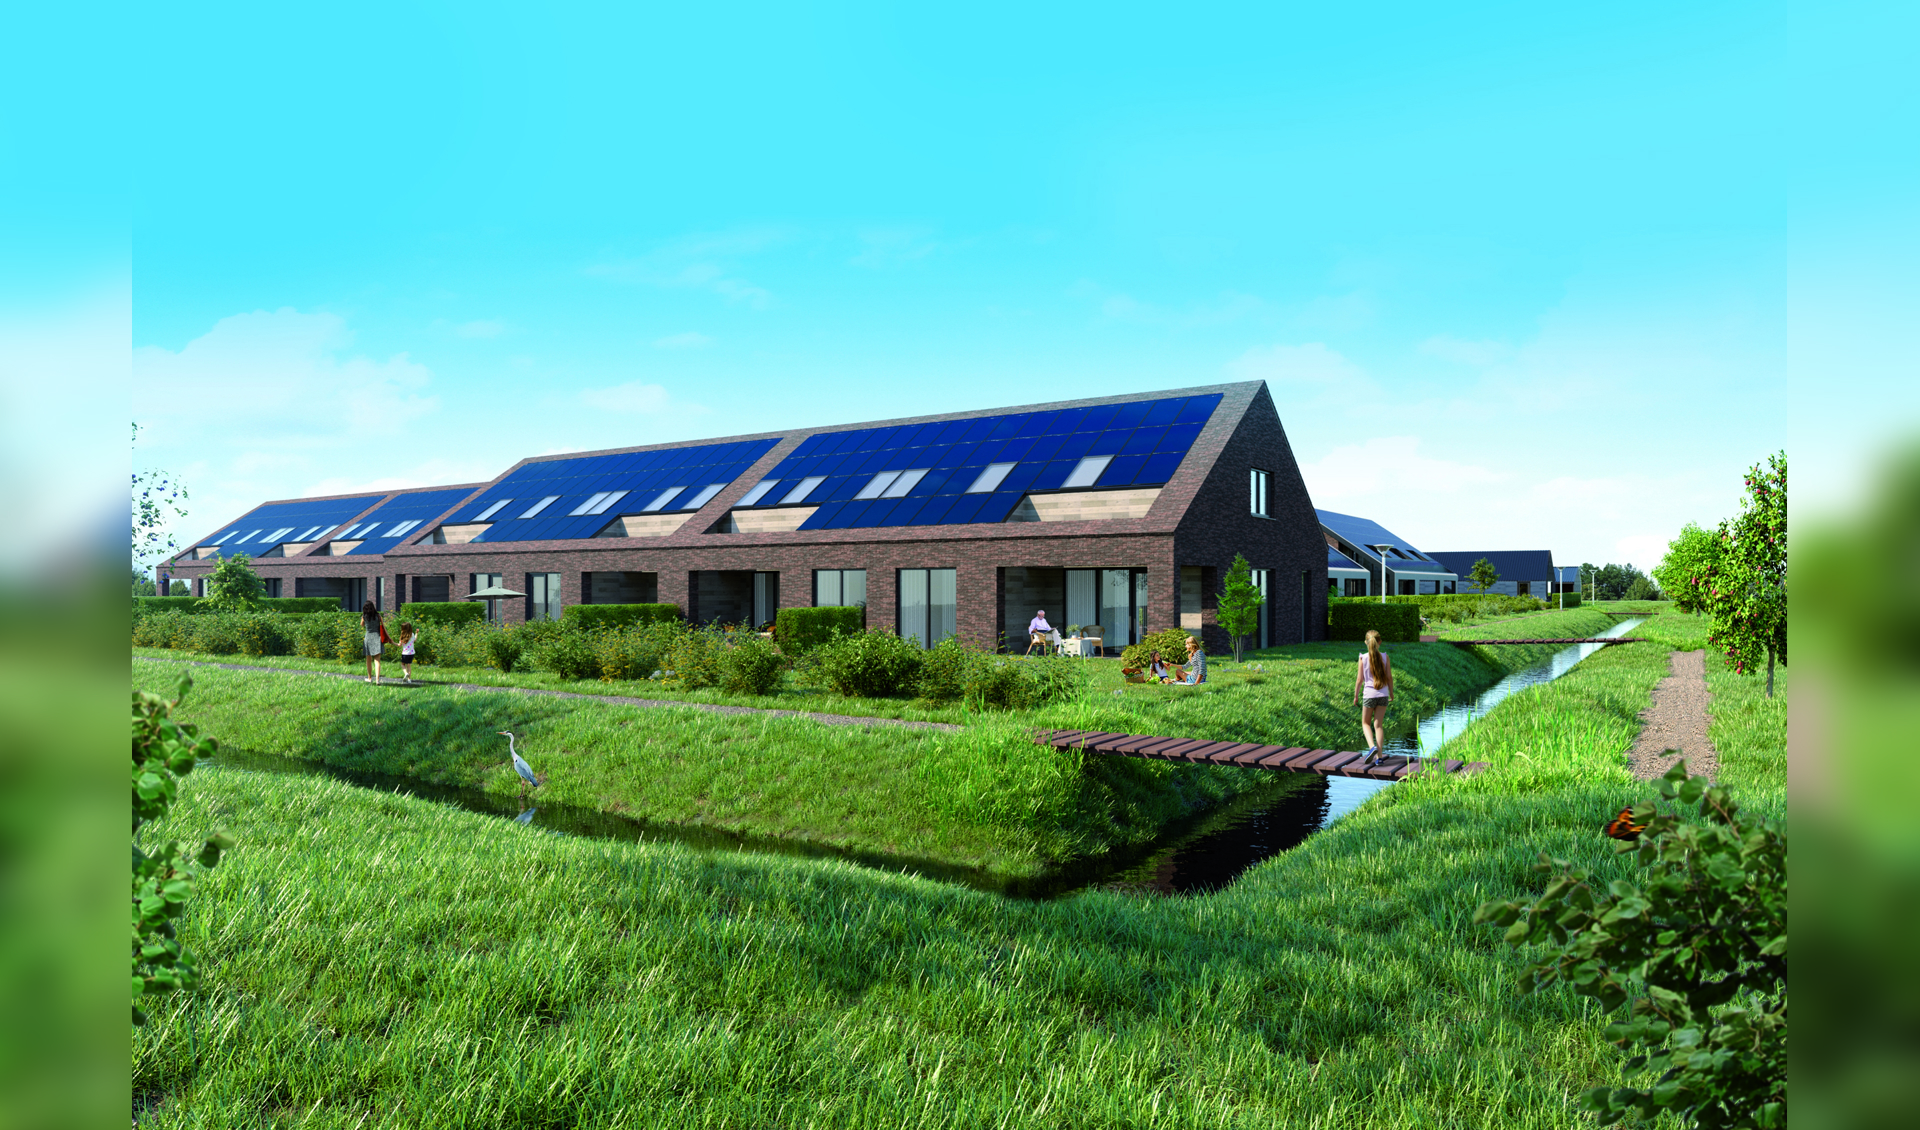 Het nieuwe project in Veghels Buiten heet: Buitenplaats Heerenboer.